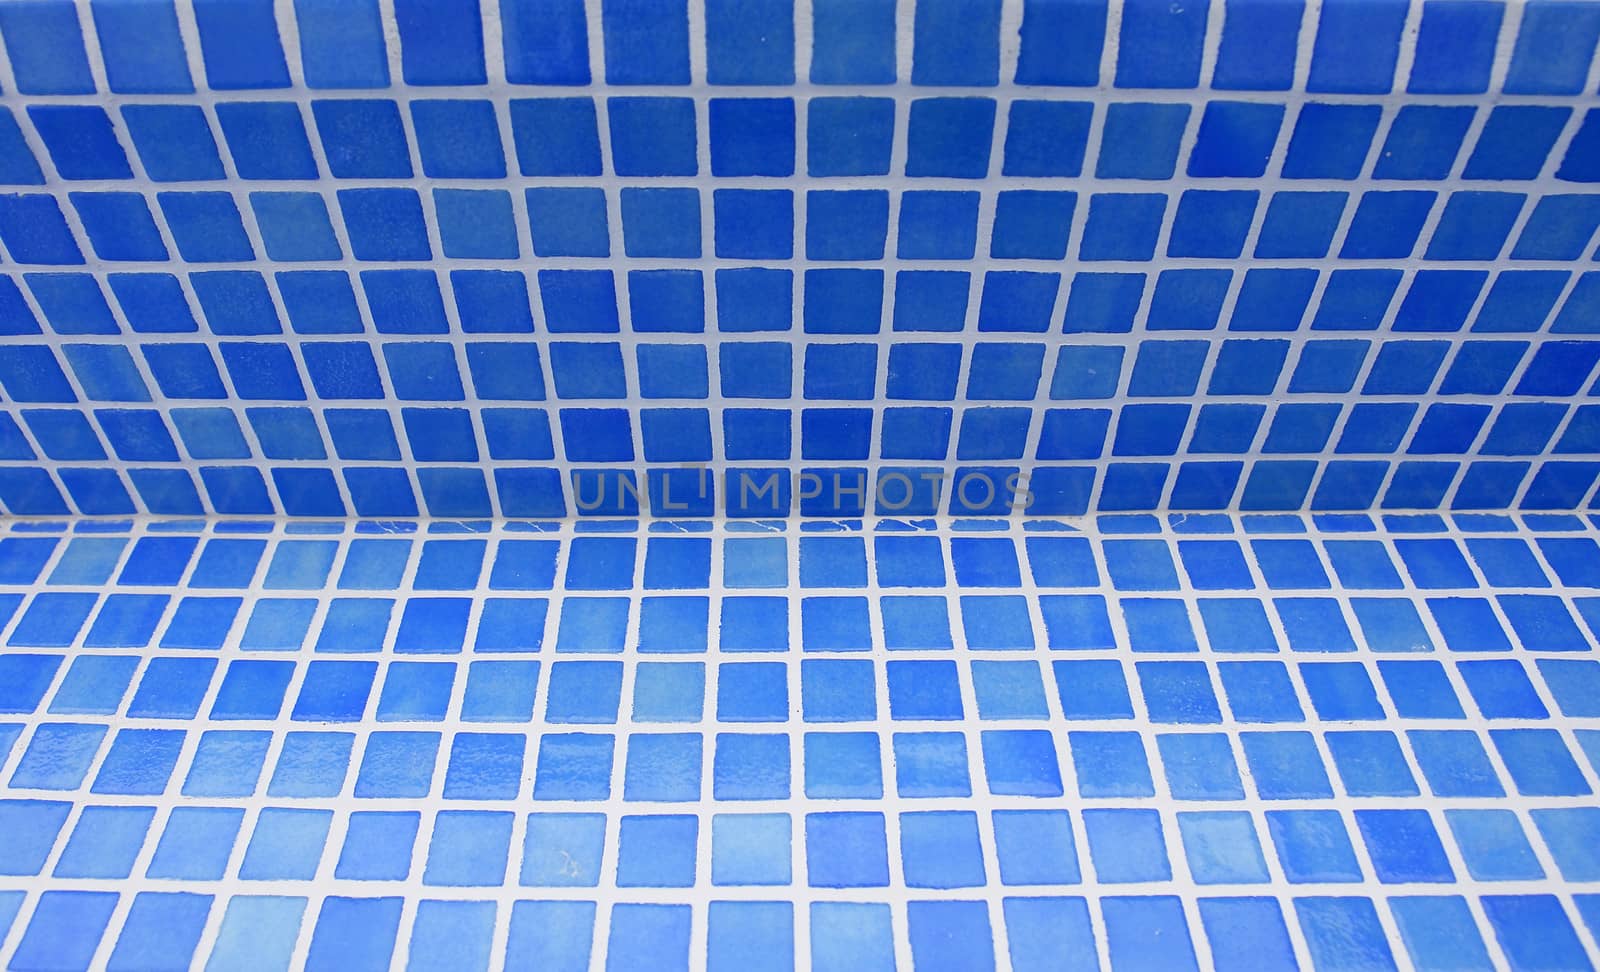 Swimming pool tile pattern detail